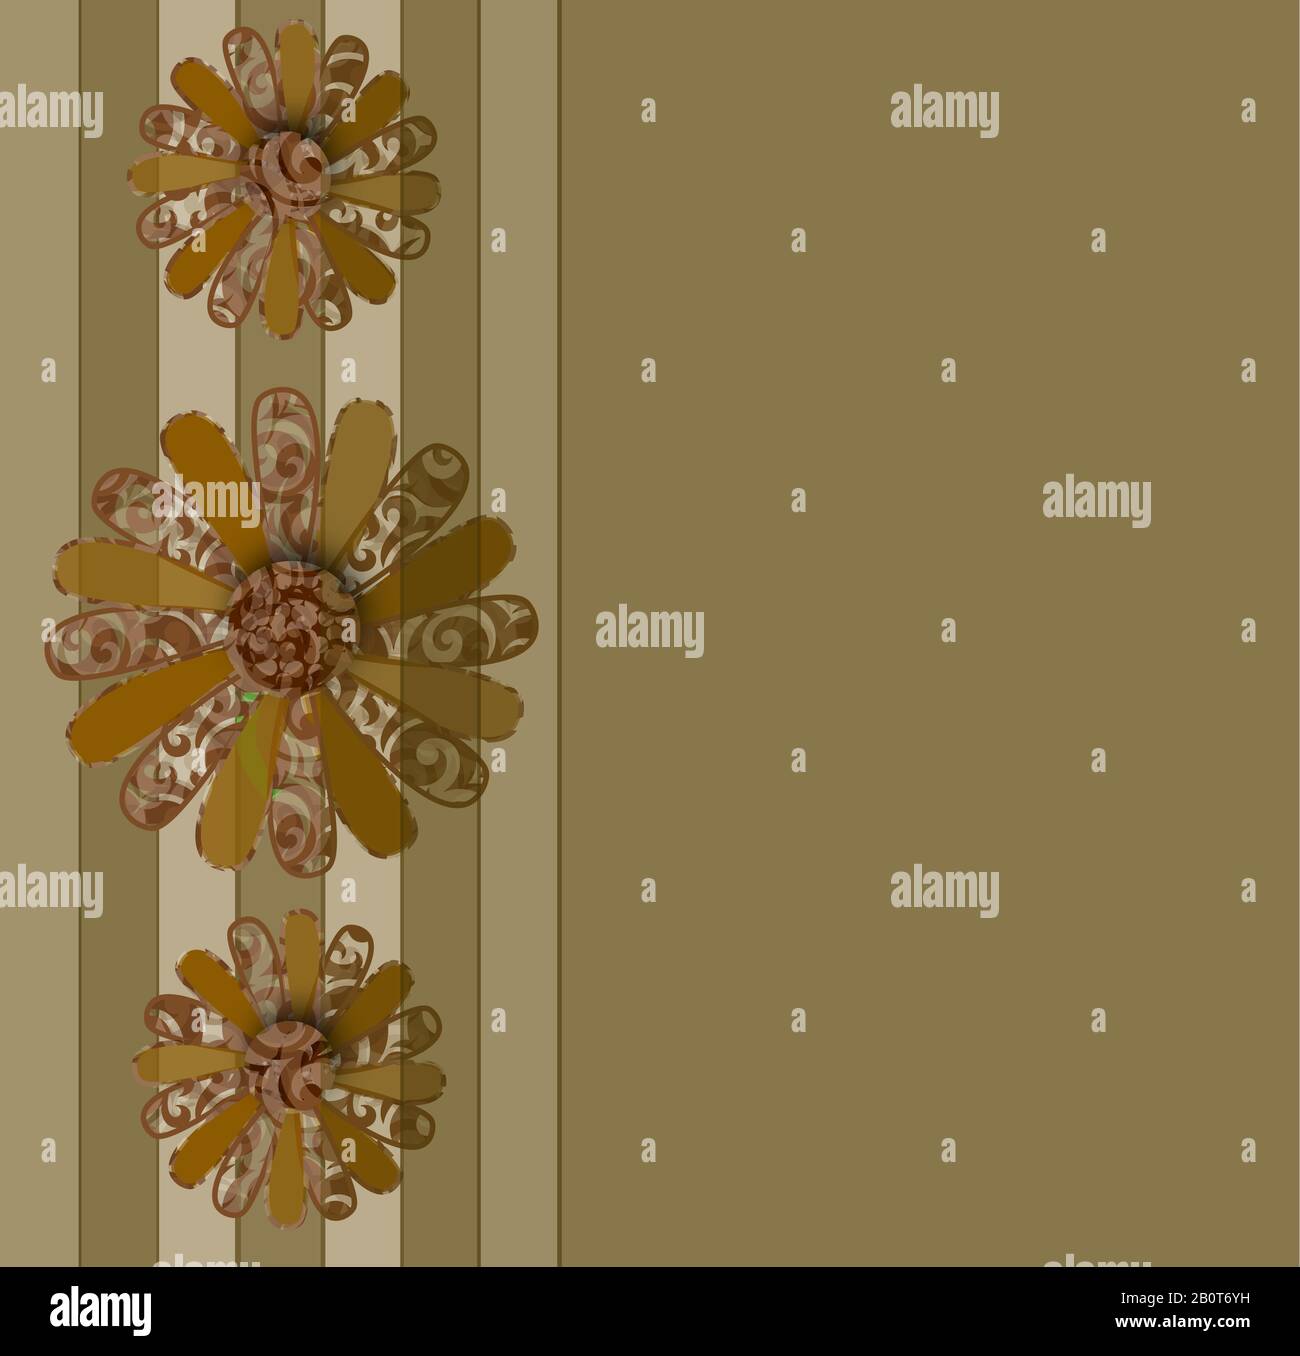 Fleurs de type Marguerite marron et beige abstraites sur fond avec un côté à rayures. Illustration graphique carrée. Banque D'Images